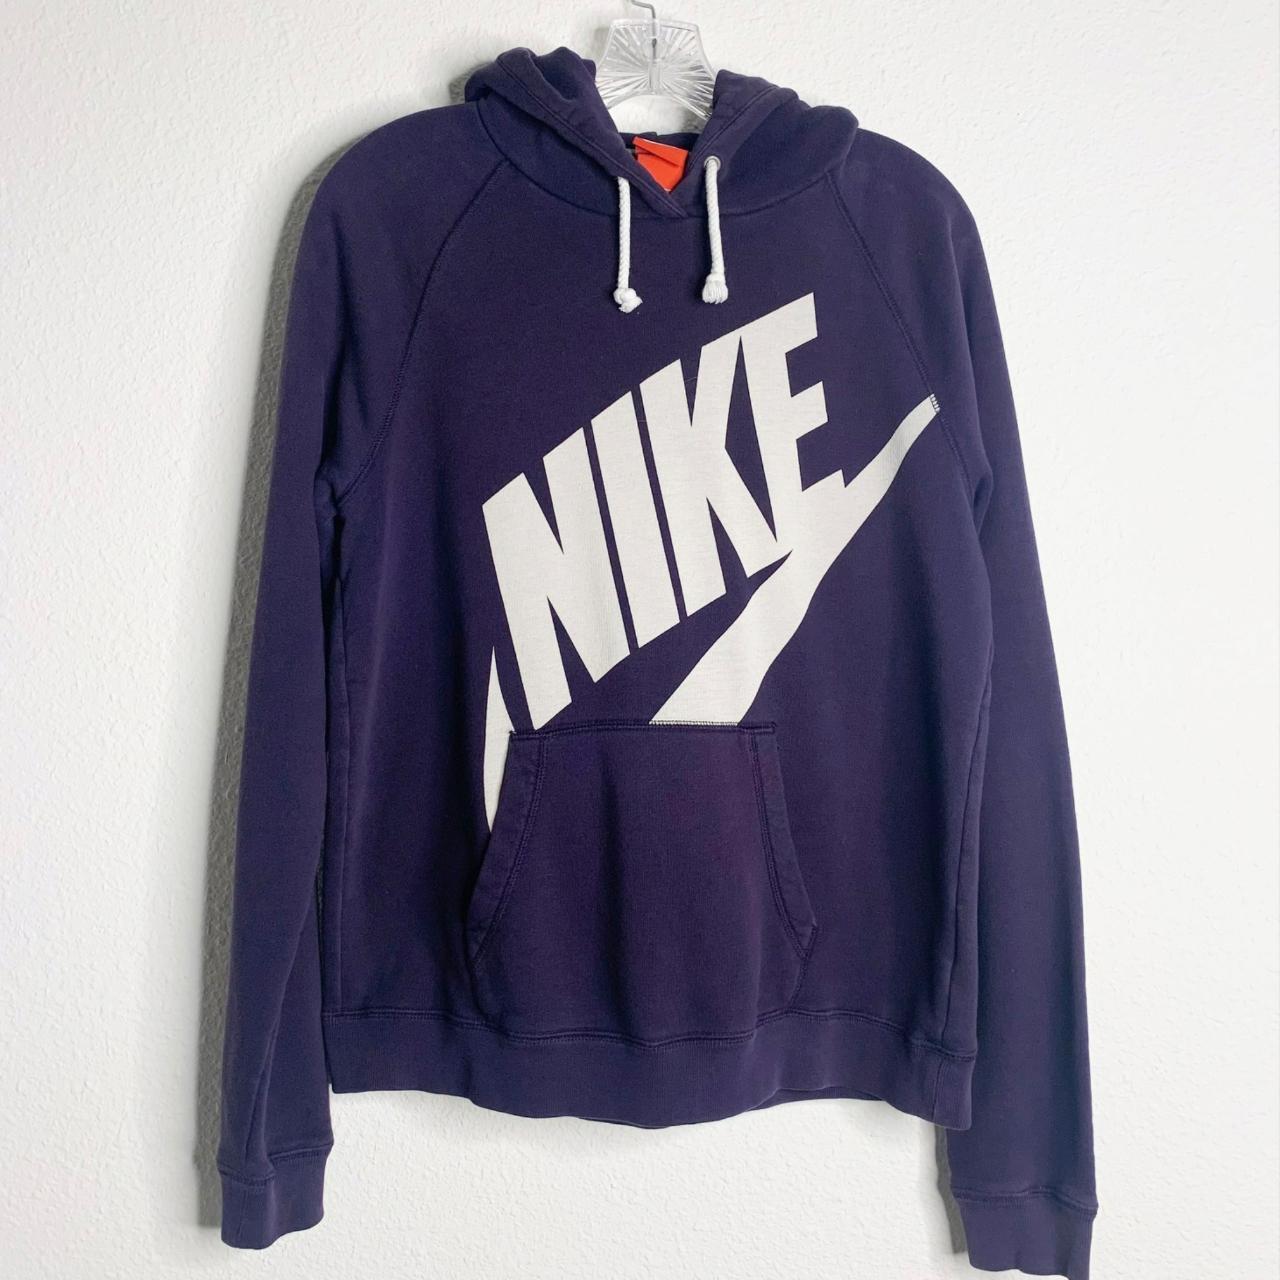 Nike Purple Pullover Hoodie Sweatshirt Spell Out Big... - Depop